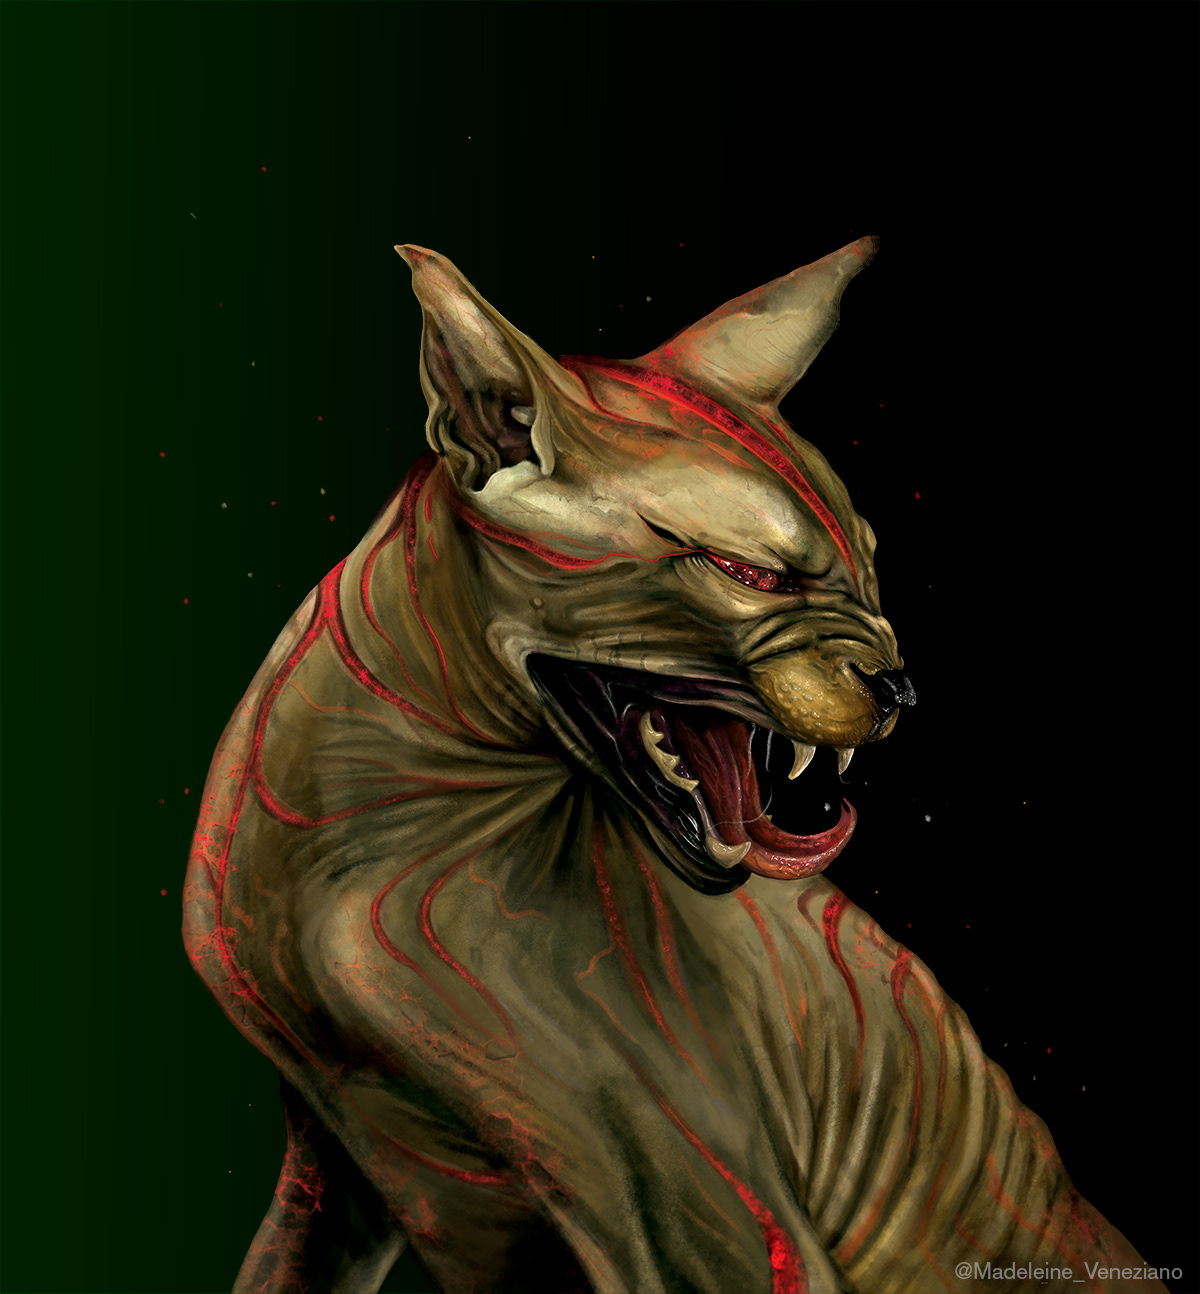 demon cat cat illustration hairless cat demon illustration digital illustration Digital Art  digital cat drawing Cat animal illustration Supernatural